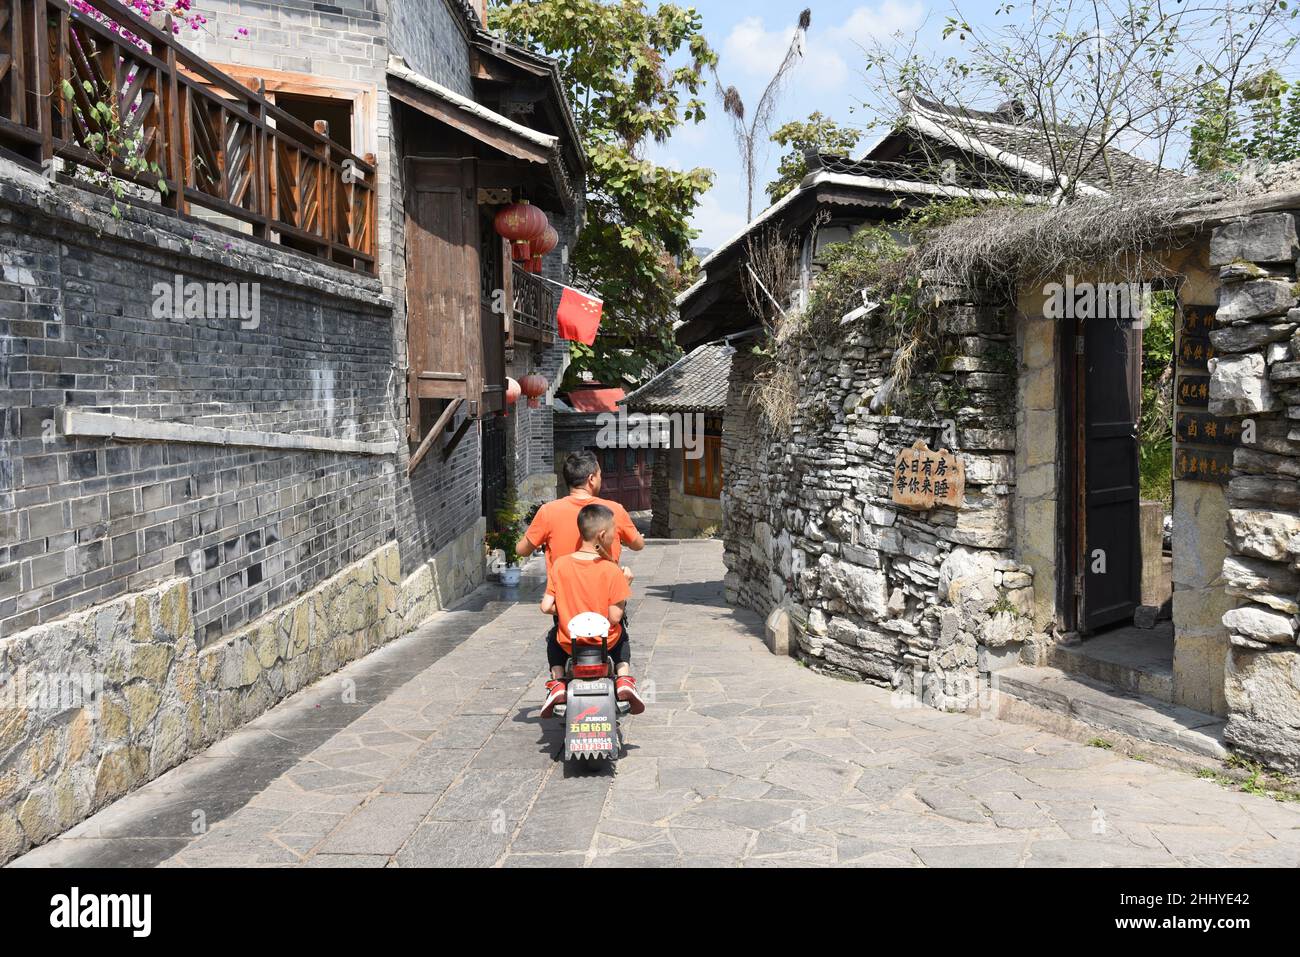 Guiyang, Guiyang, Chine.26th janvier 2022.La ville antique de Qingyan, l'une des quatre villes anciennes de Guizhou, est située dans la banlieue sud de la ville de Guiyang, province de Guizhou.Il a été construit en 10th année de Hongwu de la dynastie Ming (1378).C'était à l'origine une forteresse militaire.Les anciens bâtiments des dynasties Ming et Qing au design exquis et à la main d'œuvre exquise sont sillonnés dans la ville antique, avec des temples, des pavillons, des piliers peints et des poutres sculptées, des angles de vol et des doubles eaves.La vieille ville est pleine de gens et de culture, y compris la célébrité historique Zhou Yuh Banque D'Images